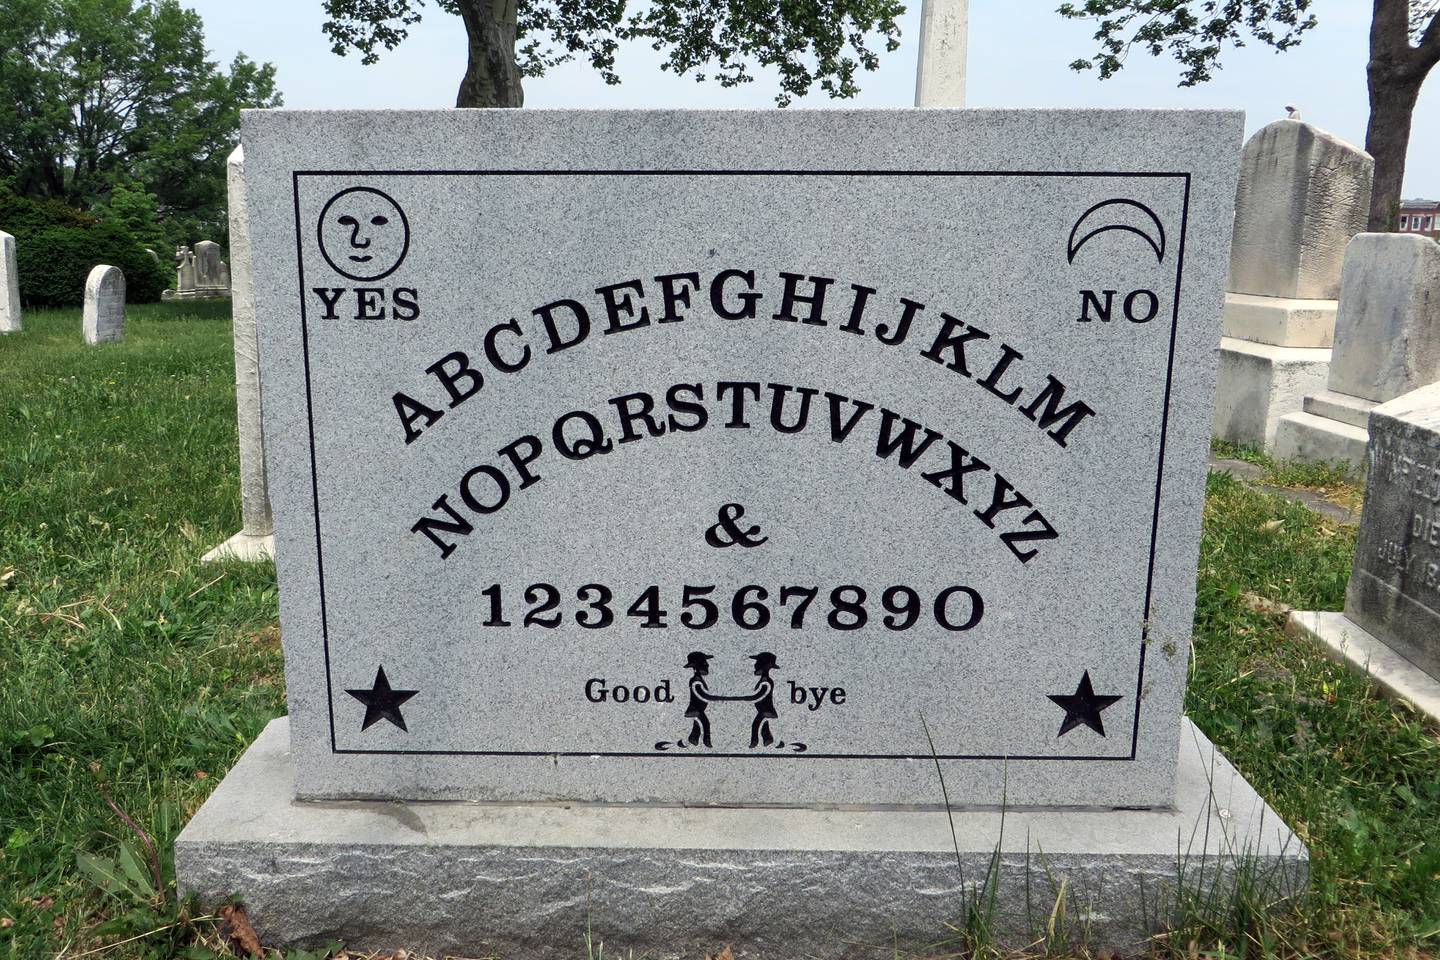 Elijah Bond's Ouija board grave in
Green Mount Cemetery.